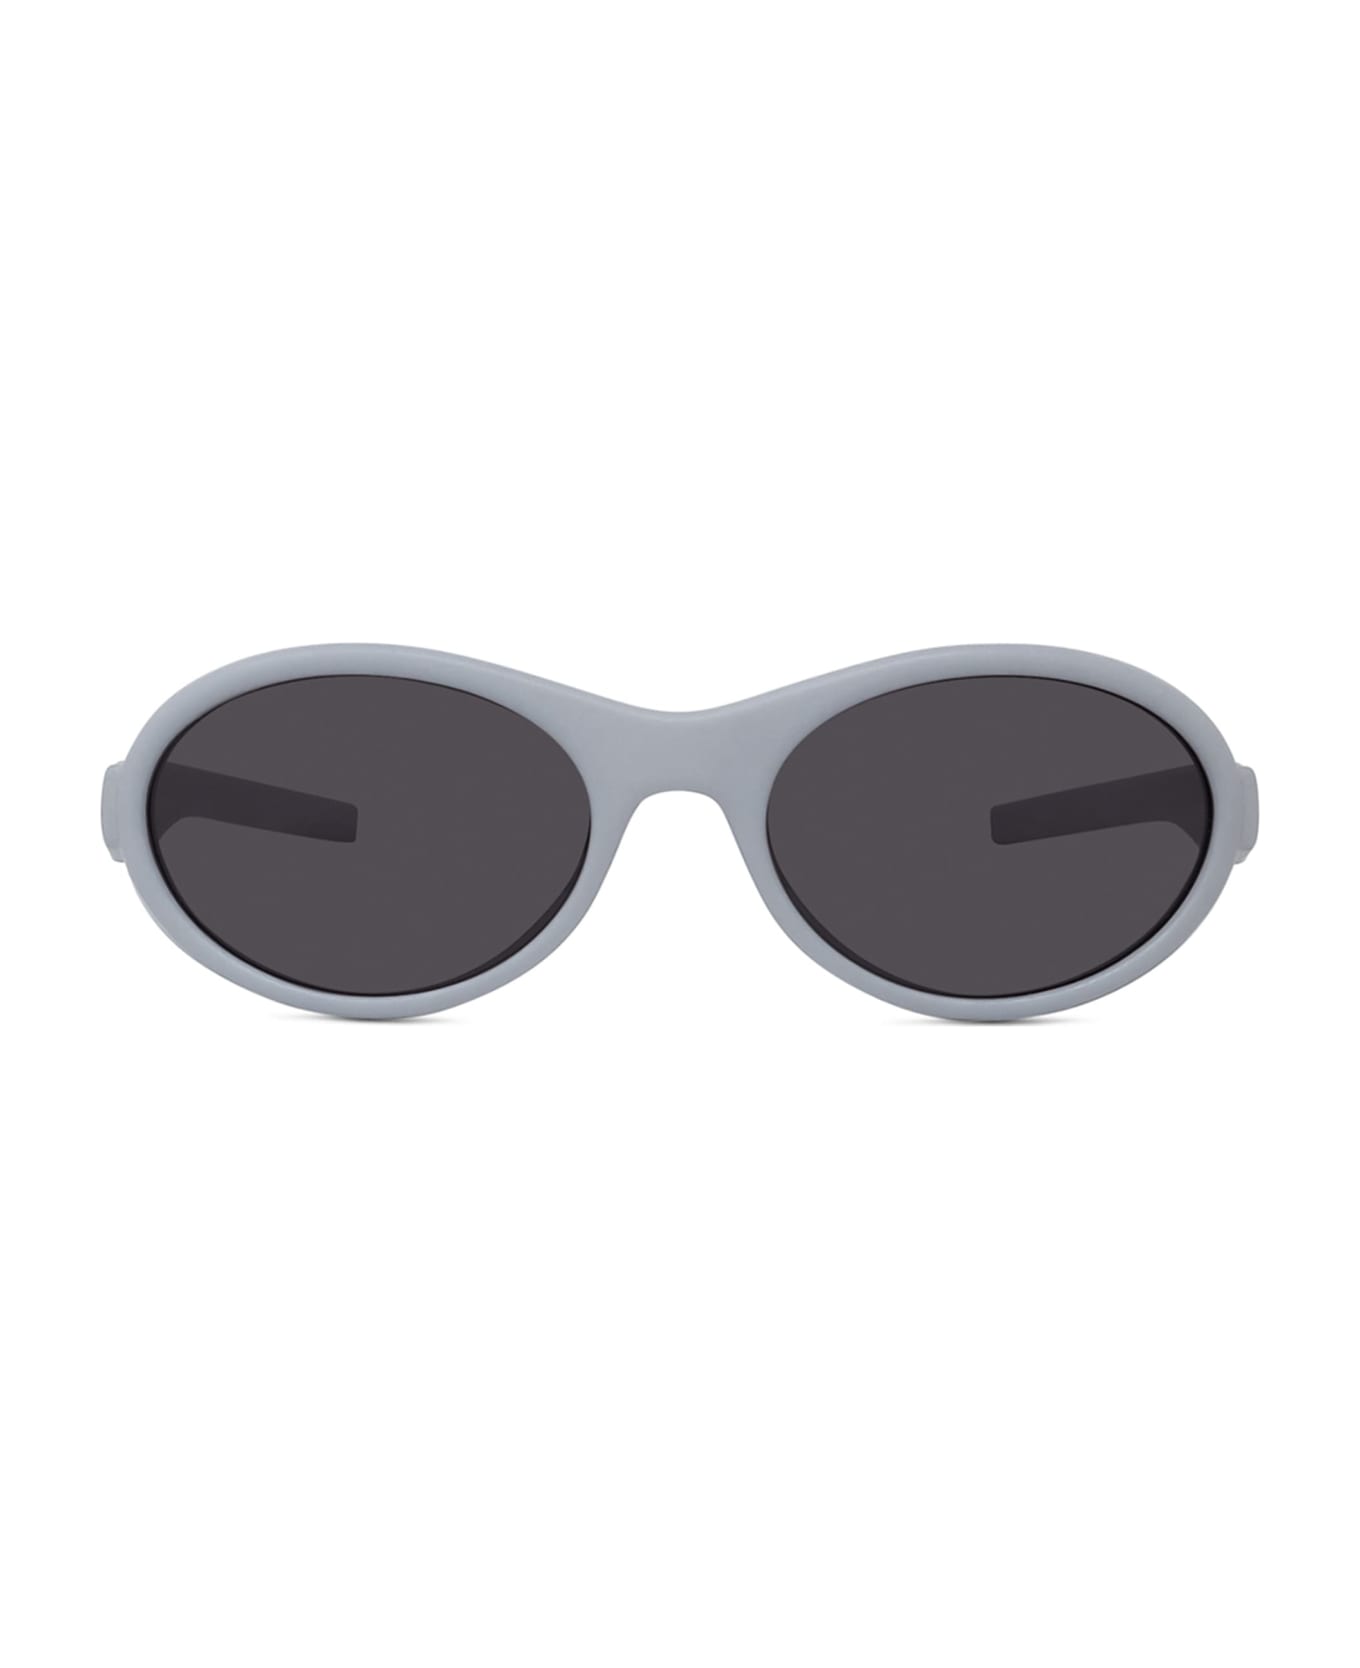 Givenchy Eyewear Gv40065i - Grey Sunglasses - grey